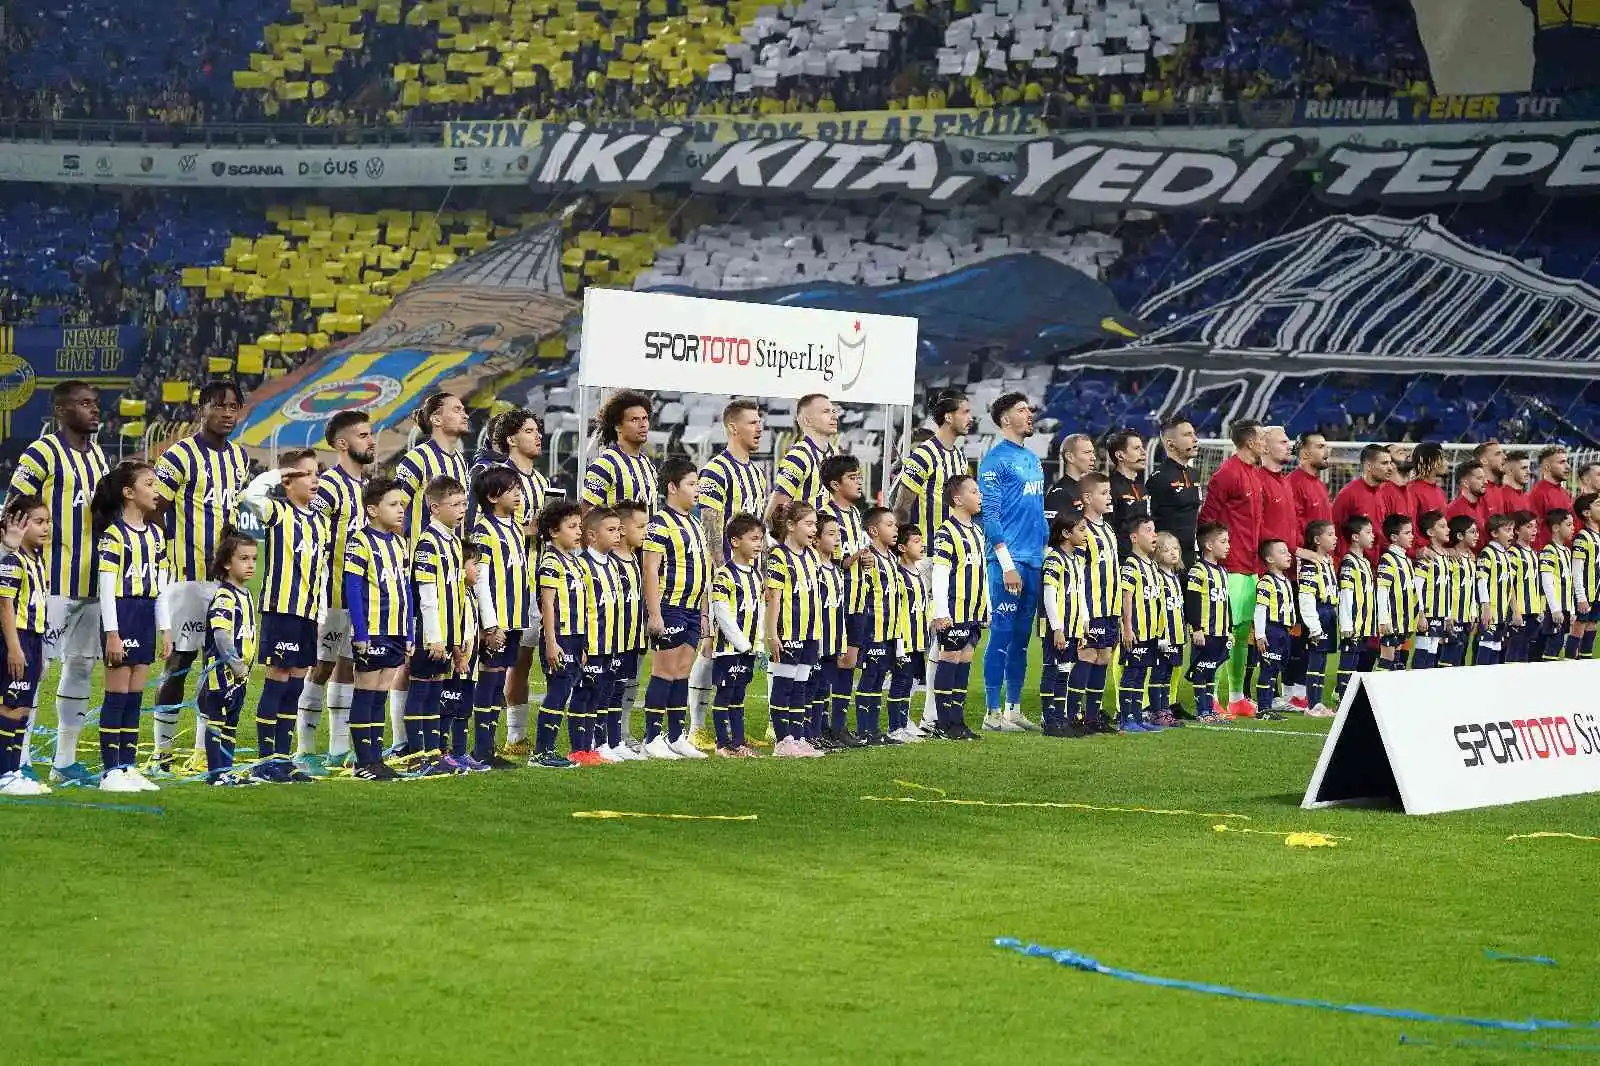 Spor Toto Süper Lig: Fenerbahçe: 0 - Galatasaray: 0 (Maç devam ediyor)
